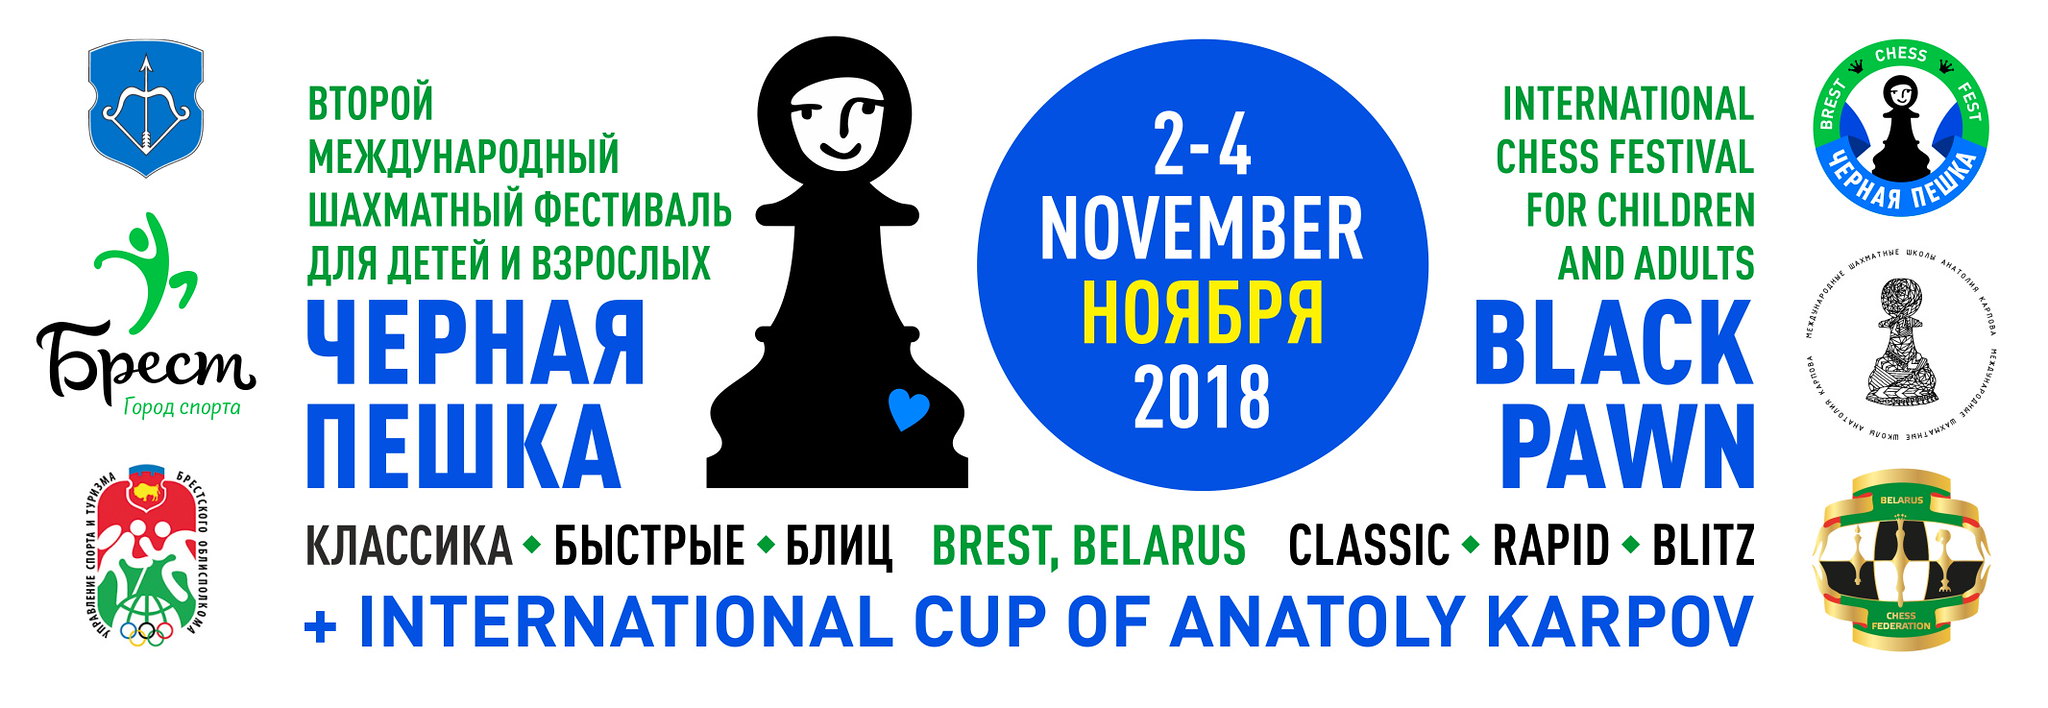 Второй международный шахматный фестиваль "Чёрная пешка" состоится в Бресте 2-4 ноября